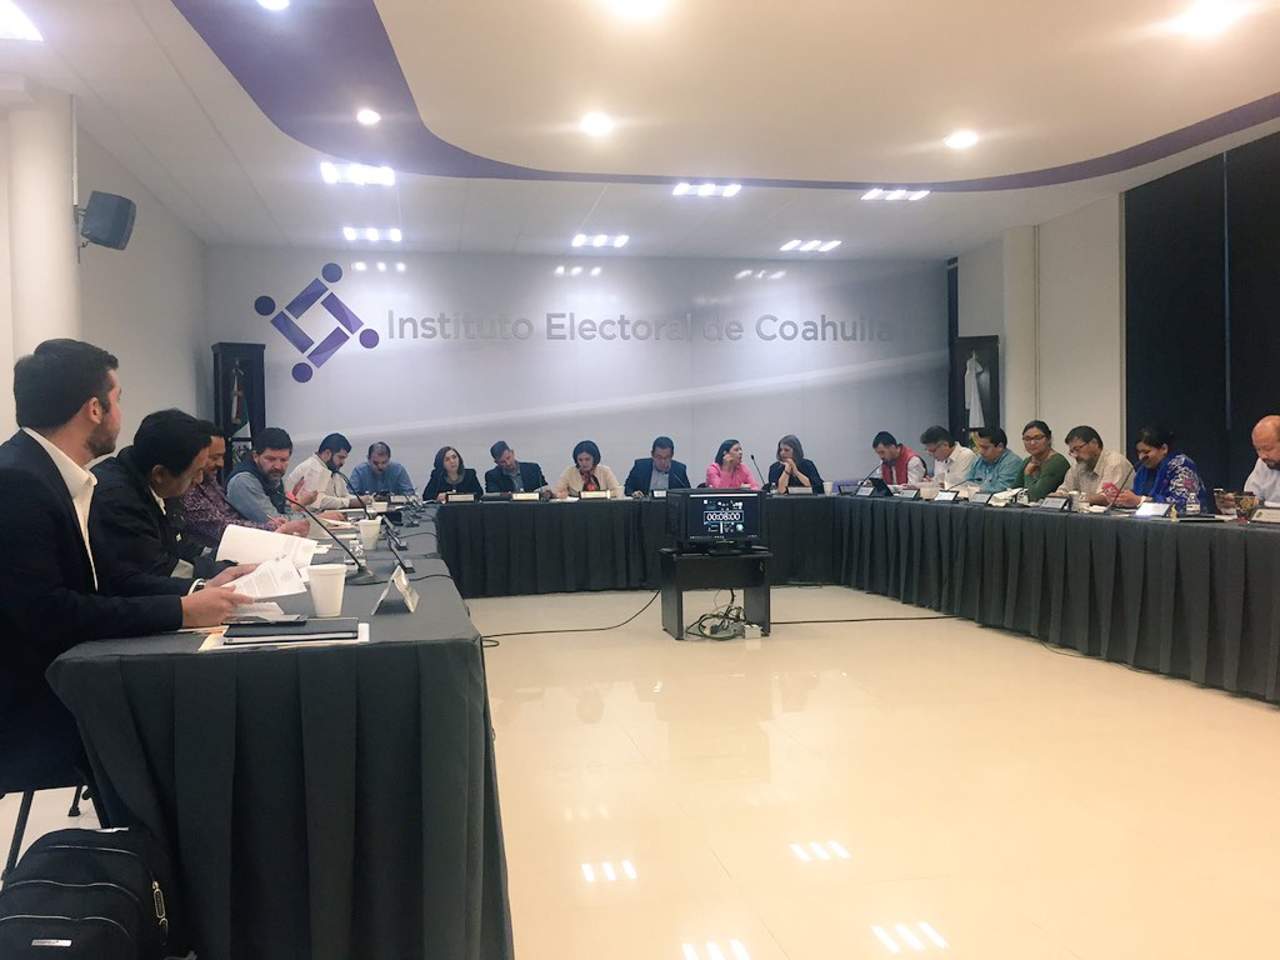 EL IEC definió los debates que se realizarán rumbo a la elección a gobernador de Coahuila. (TWITTER)